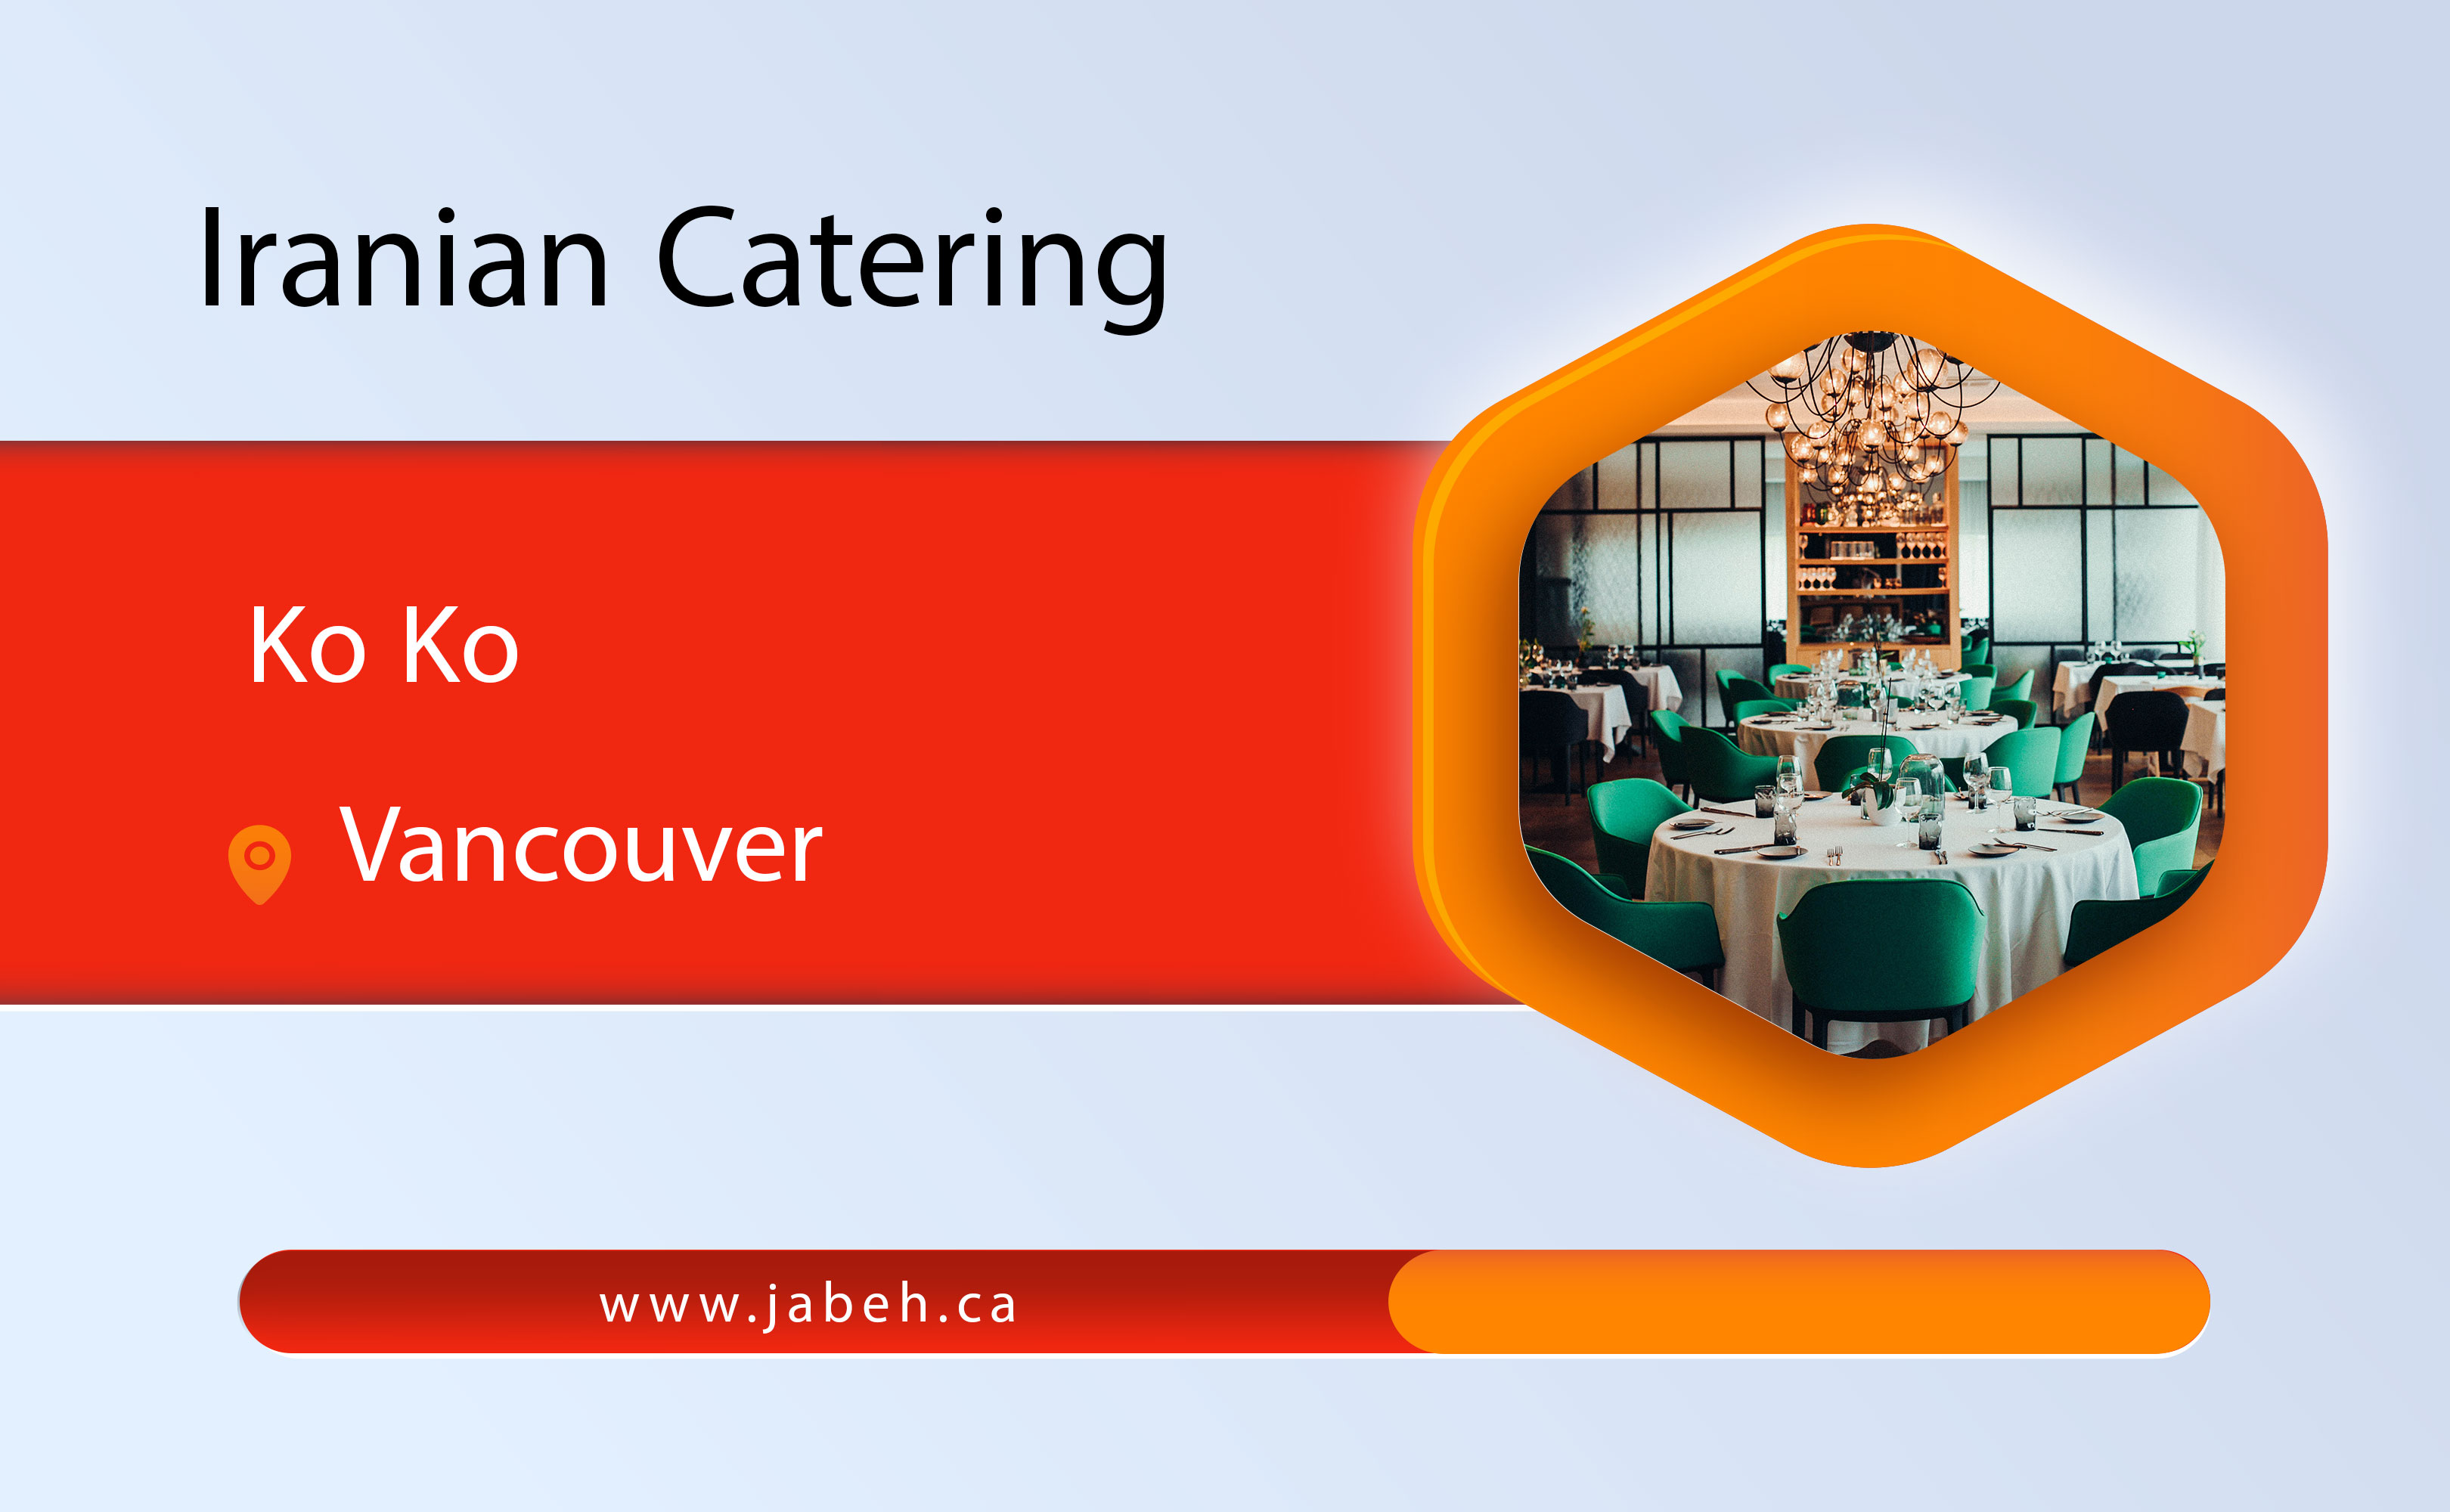 Ko Ko Iranian catering in Vancouver